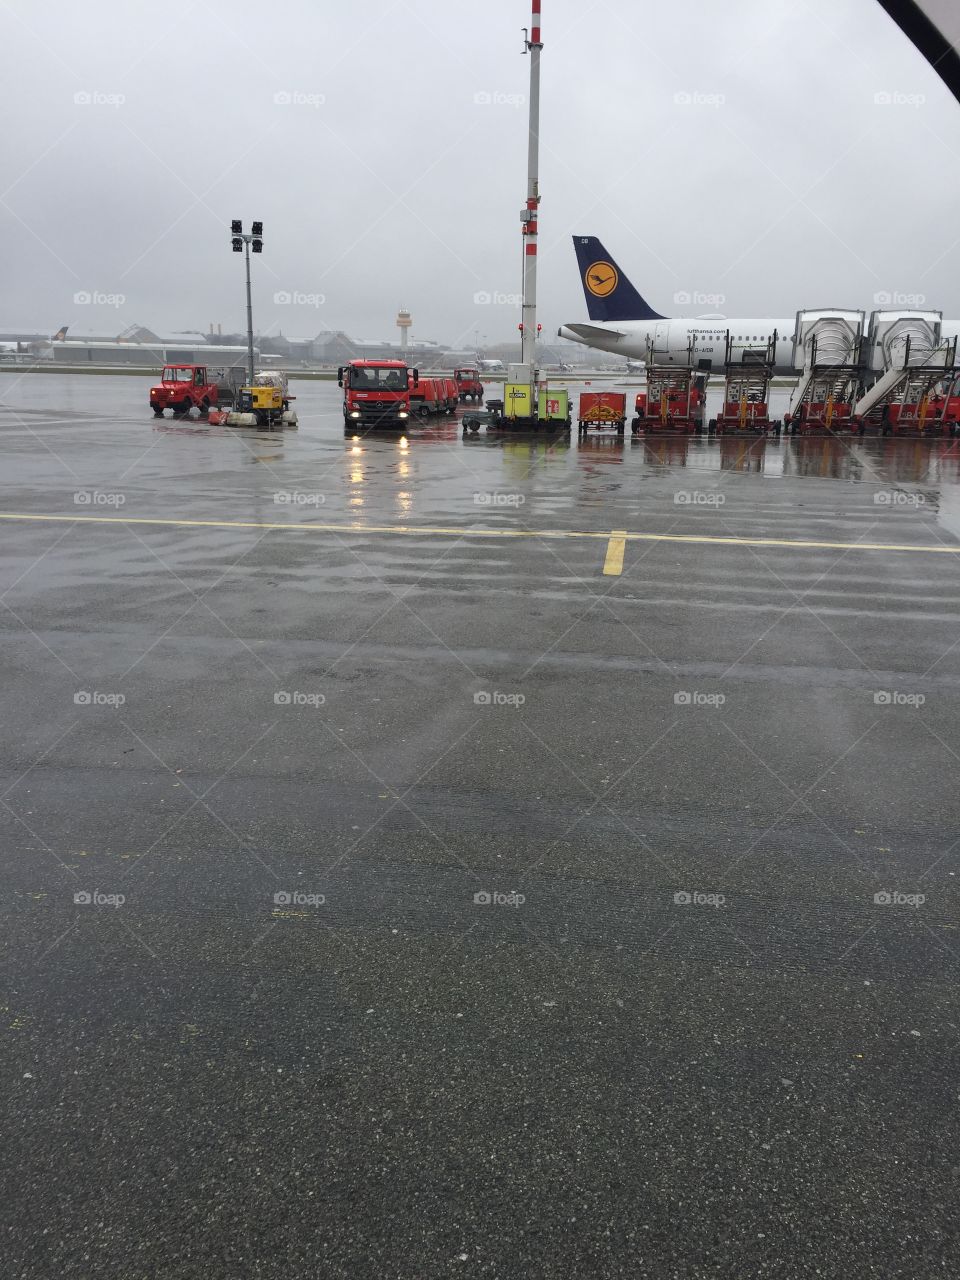 Raining in airport 